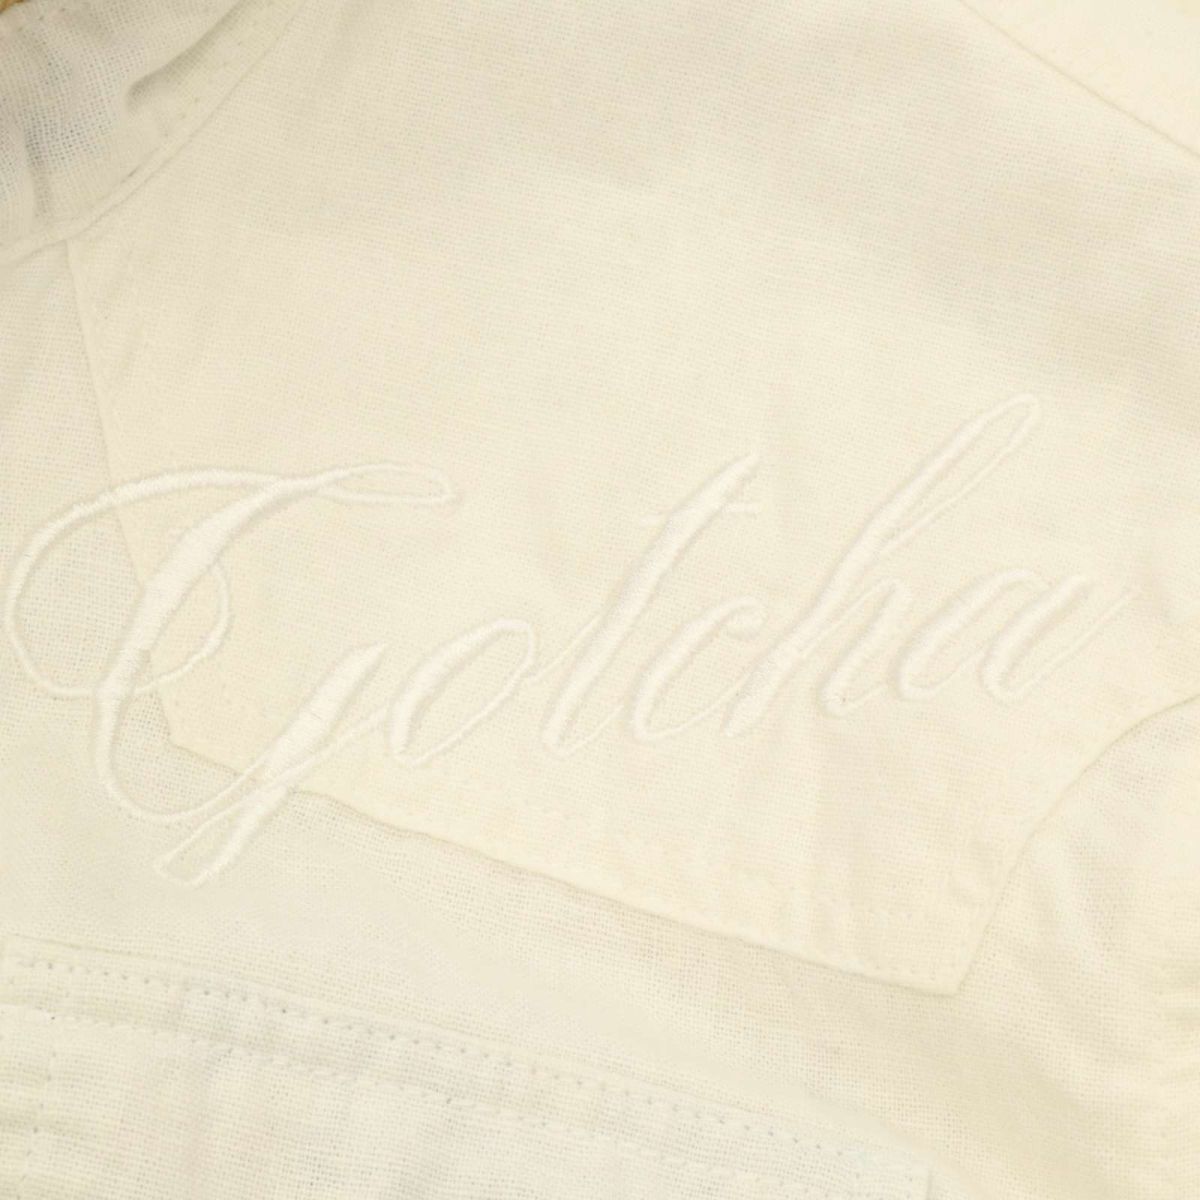 GOTCHA Gotcha весна лето короткий рукав воротник тросик Logo вышивка * [ лен linen] рубашка work shirt Sz.L мужской белый Surf C4T04202_5#A